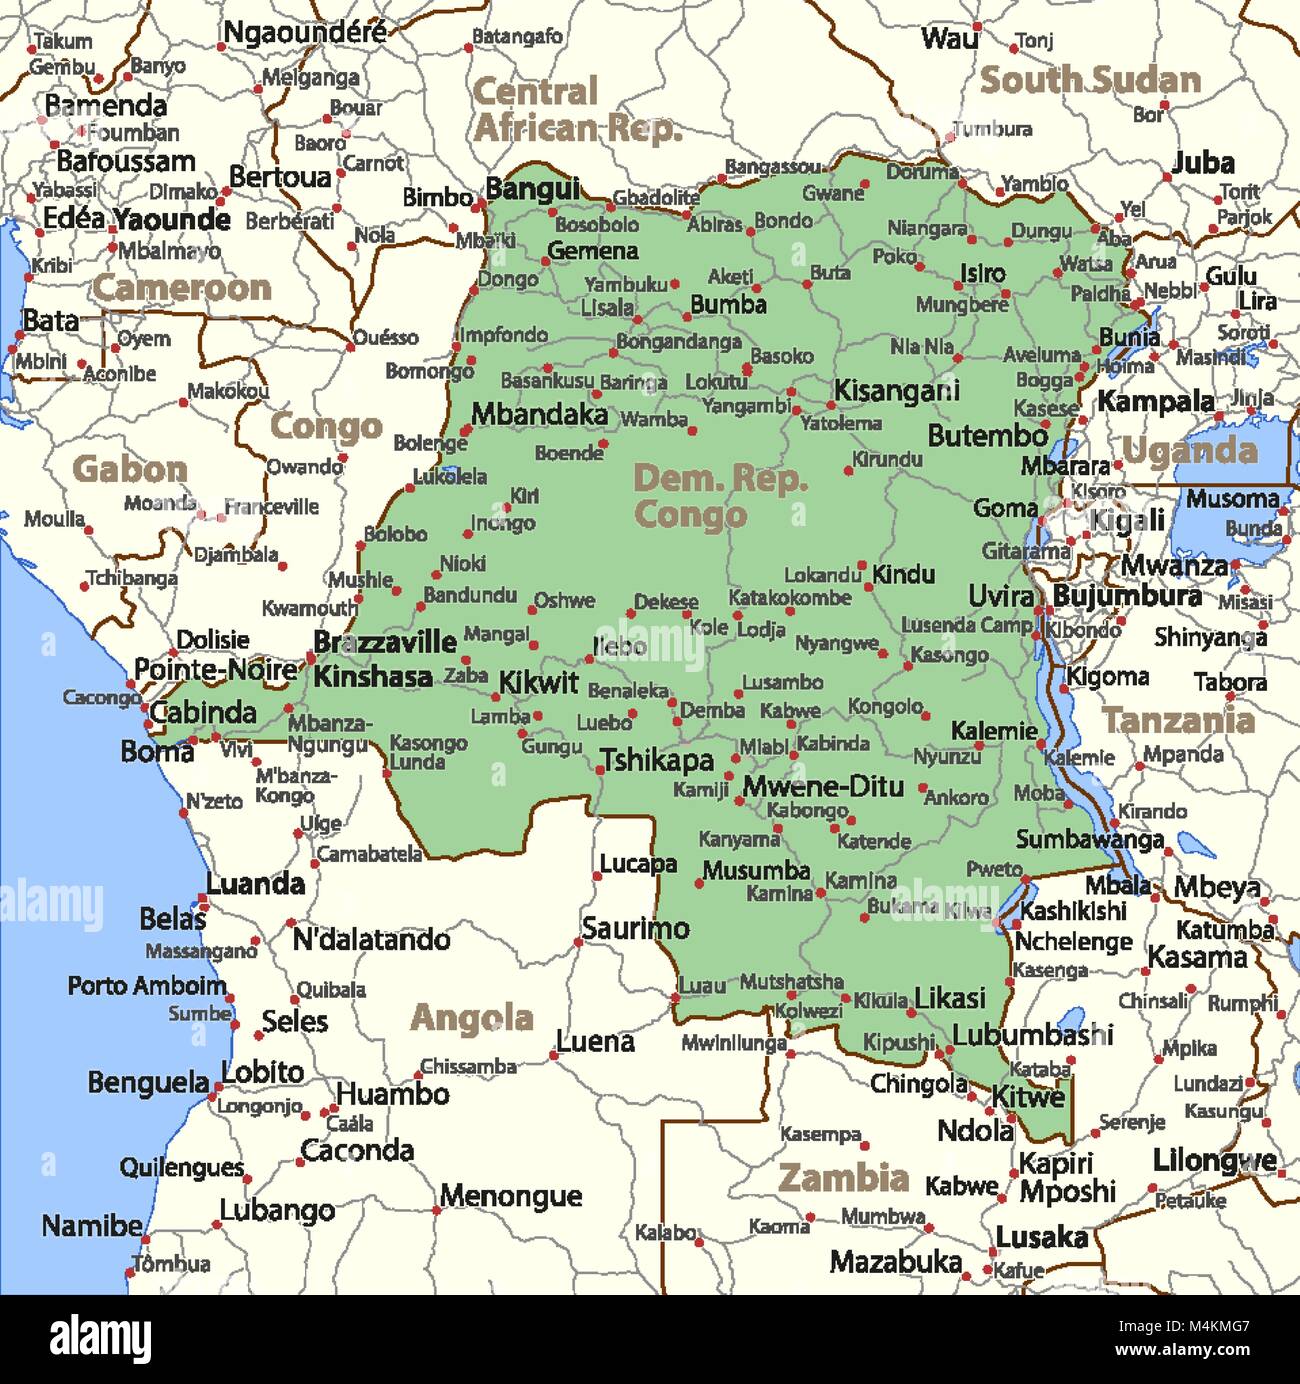 Mappa di Repubblica Democratica del Congo. Mostra i confini, zone urbane, nomi di località e strade. Le etichette in inglese dove possibile. Proiezione: proiezione di Mercatore. Illustrazione Vettoriale